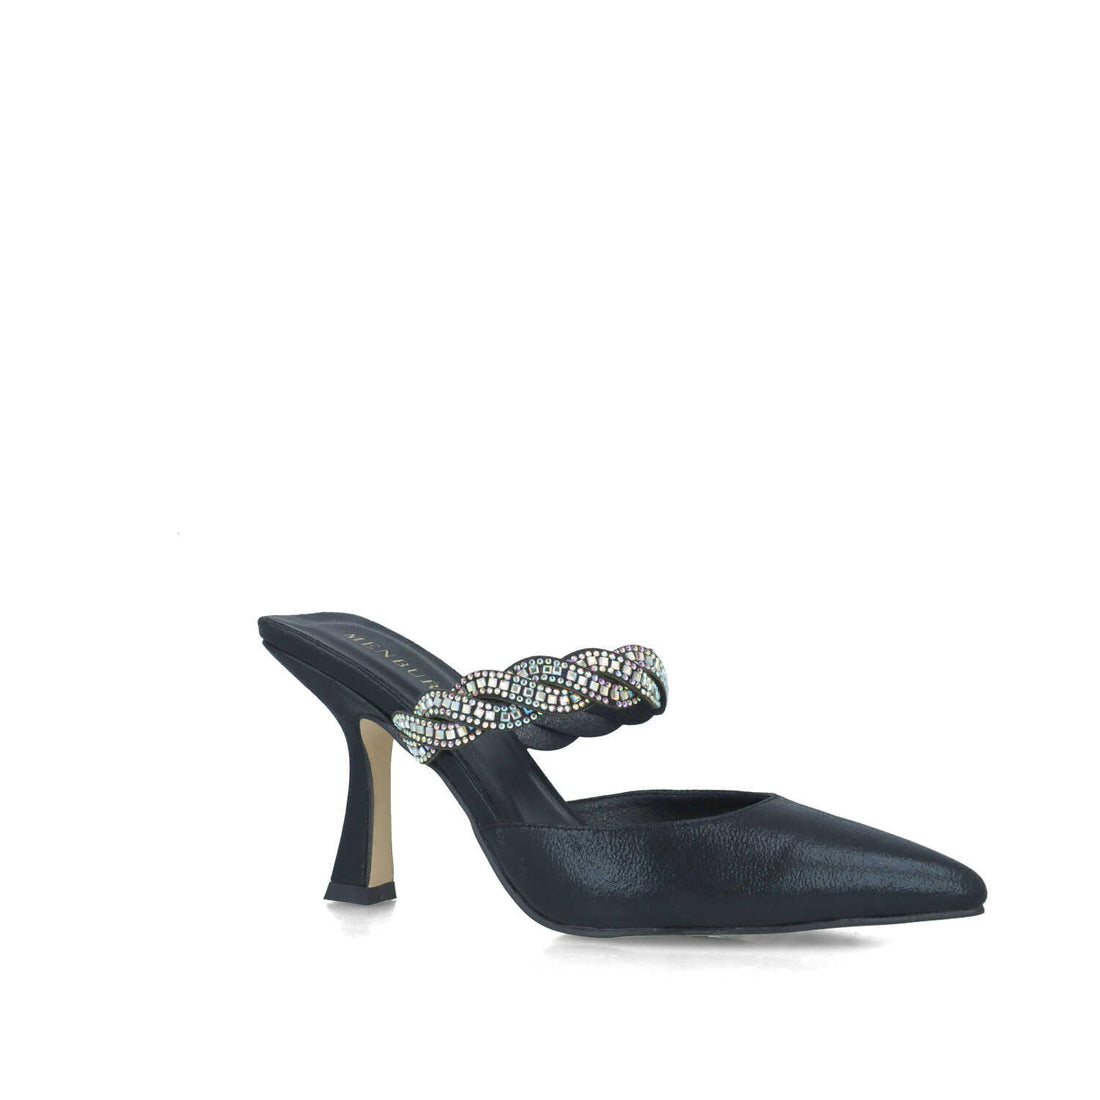 Black Sandal With Embellished Strap_24795_01_02